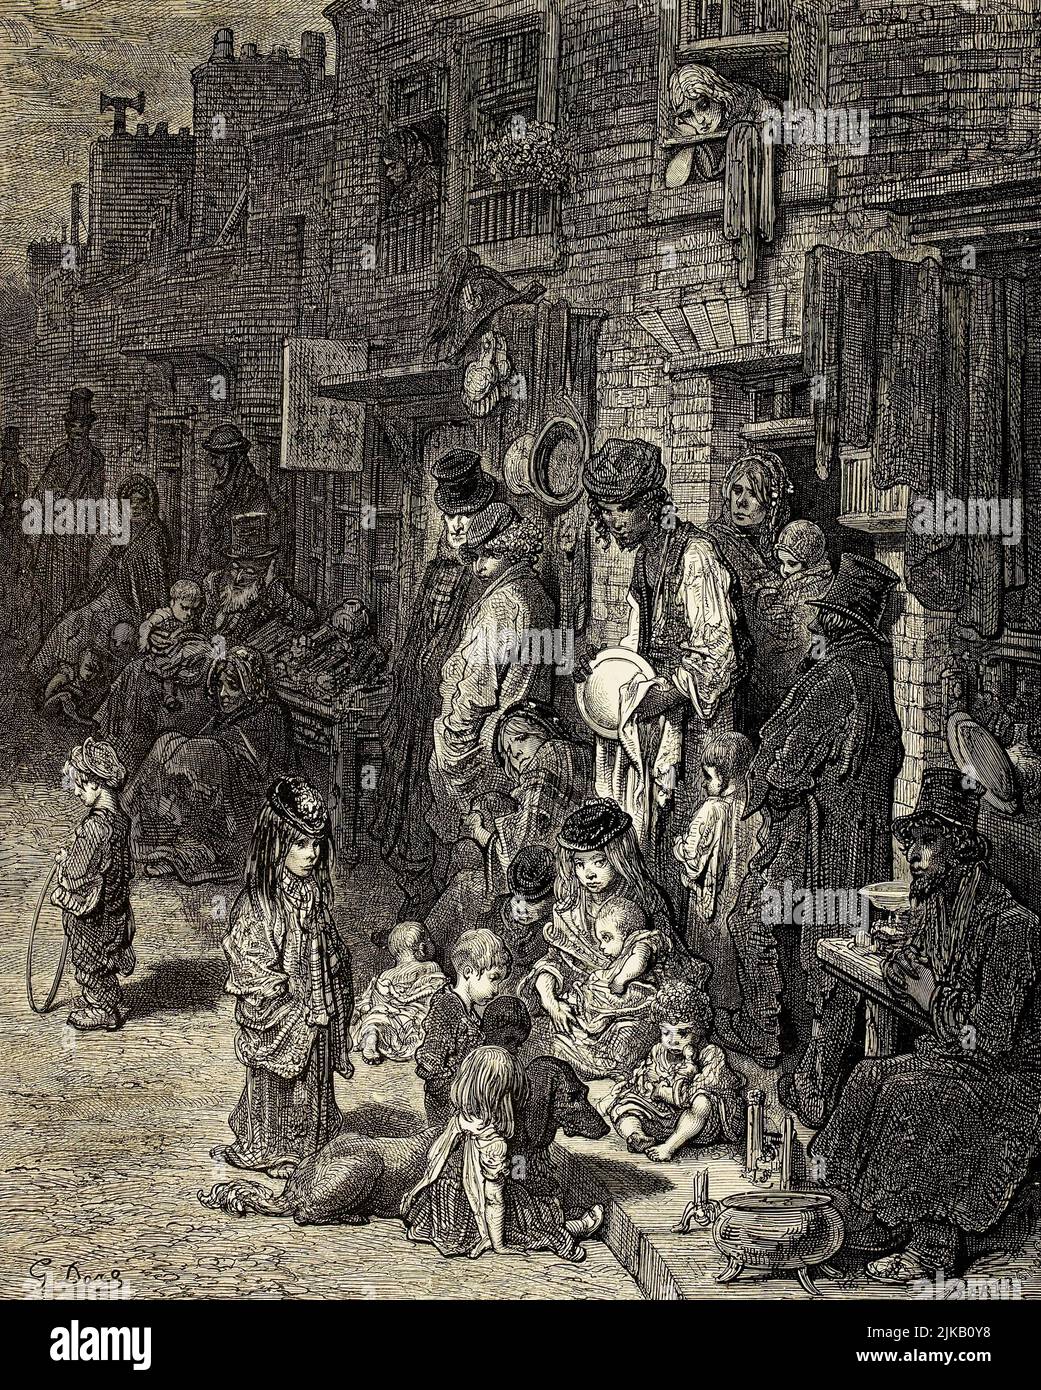 Wentworth Street, Whitechapel. Wentworth Street era tra le più povere e affollate a Whitechapel al tempo in cui Dore visitò Londra. Dopo un'illustrazione di Gustave Doré nell'edizione americana di Londra del 1890: Un pellegrinaggio, scritto da Blanchard Jerrold e illustrato da Gustave Doré. Foto Stock